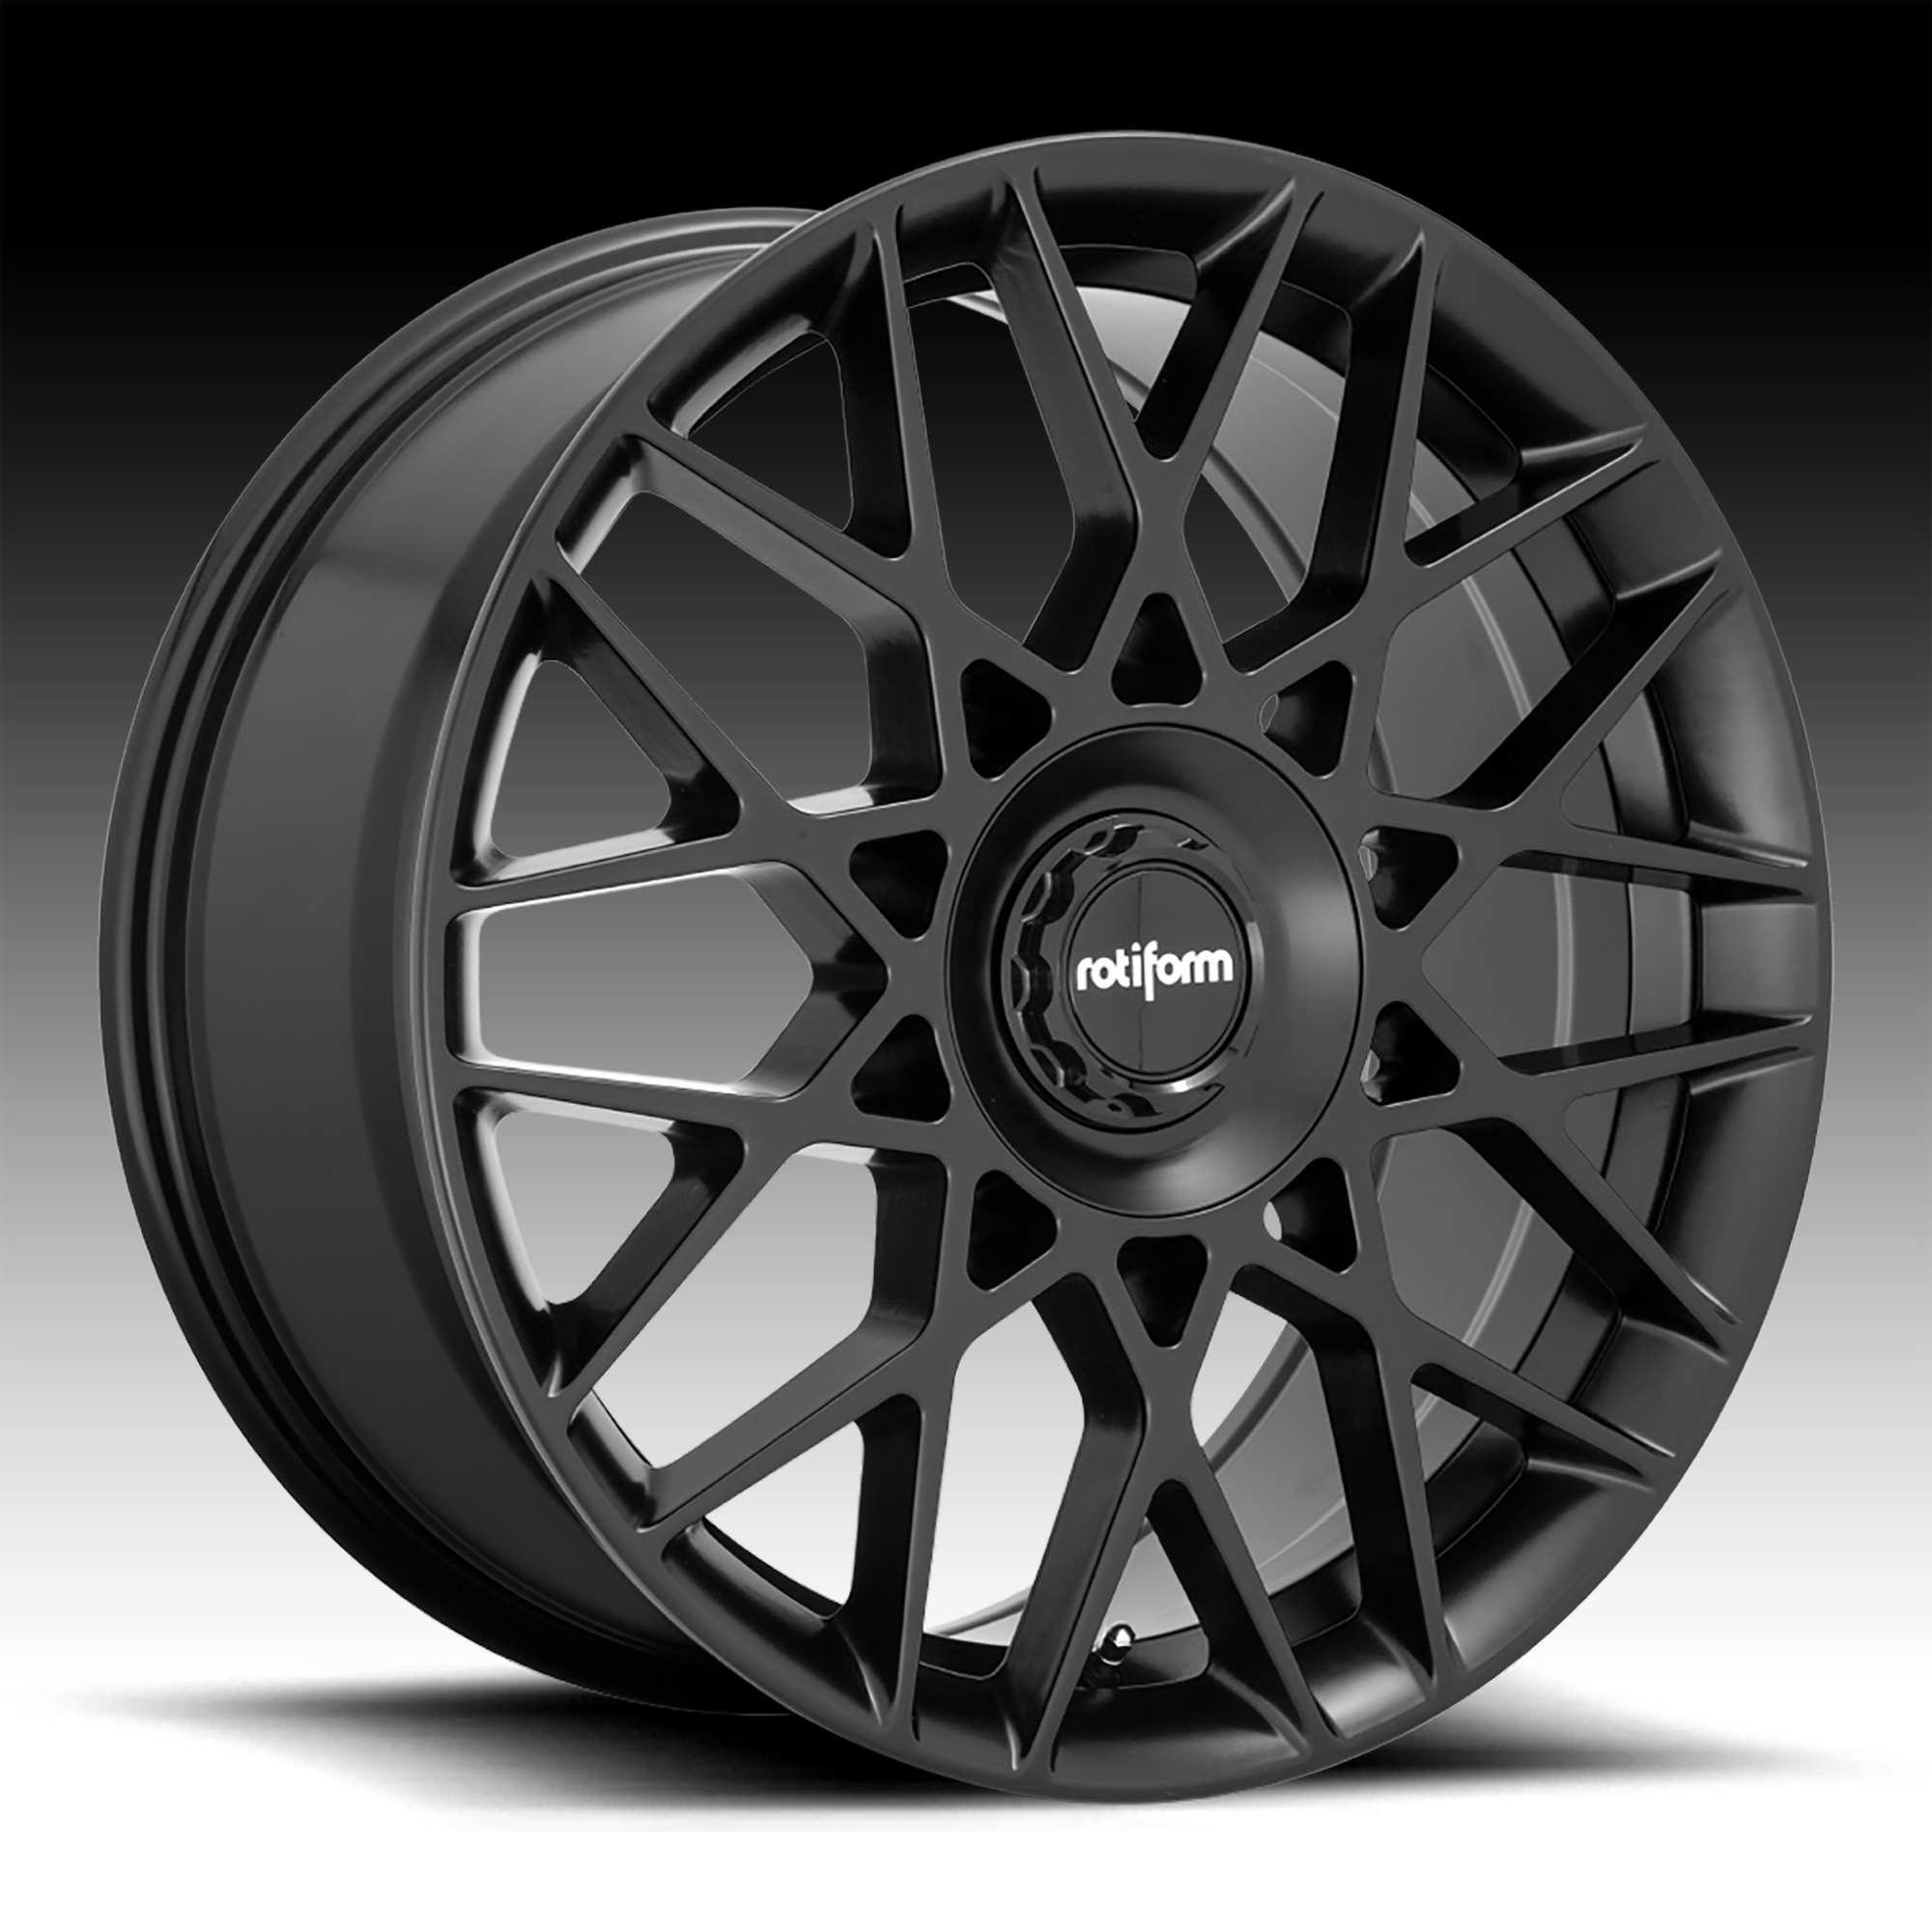 Rotiform Blq C R165 Matte Black Custom Wheels Rims Blq C R165